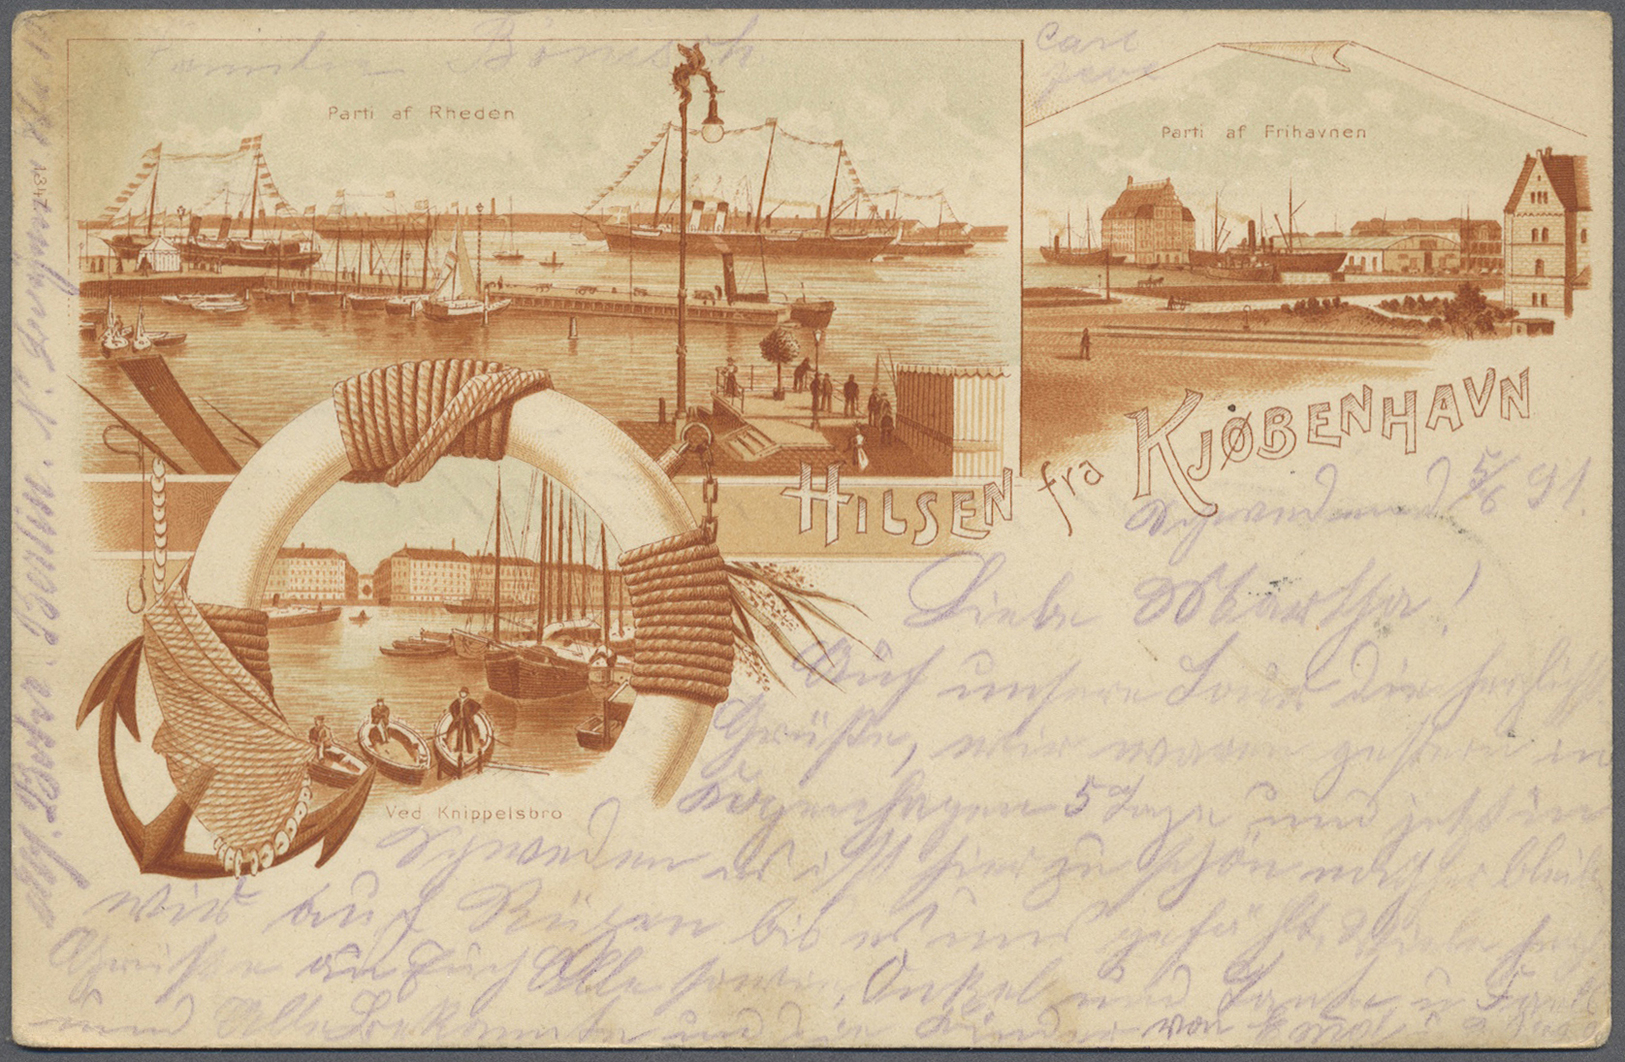 Br/GA/ Dänemark: 1890 (ab), dabei interessante Ganzsachen, Flugpost, alte Ansichtskarten, Perfins u. a.